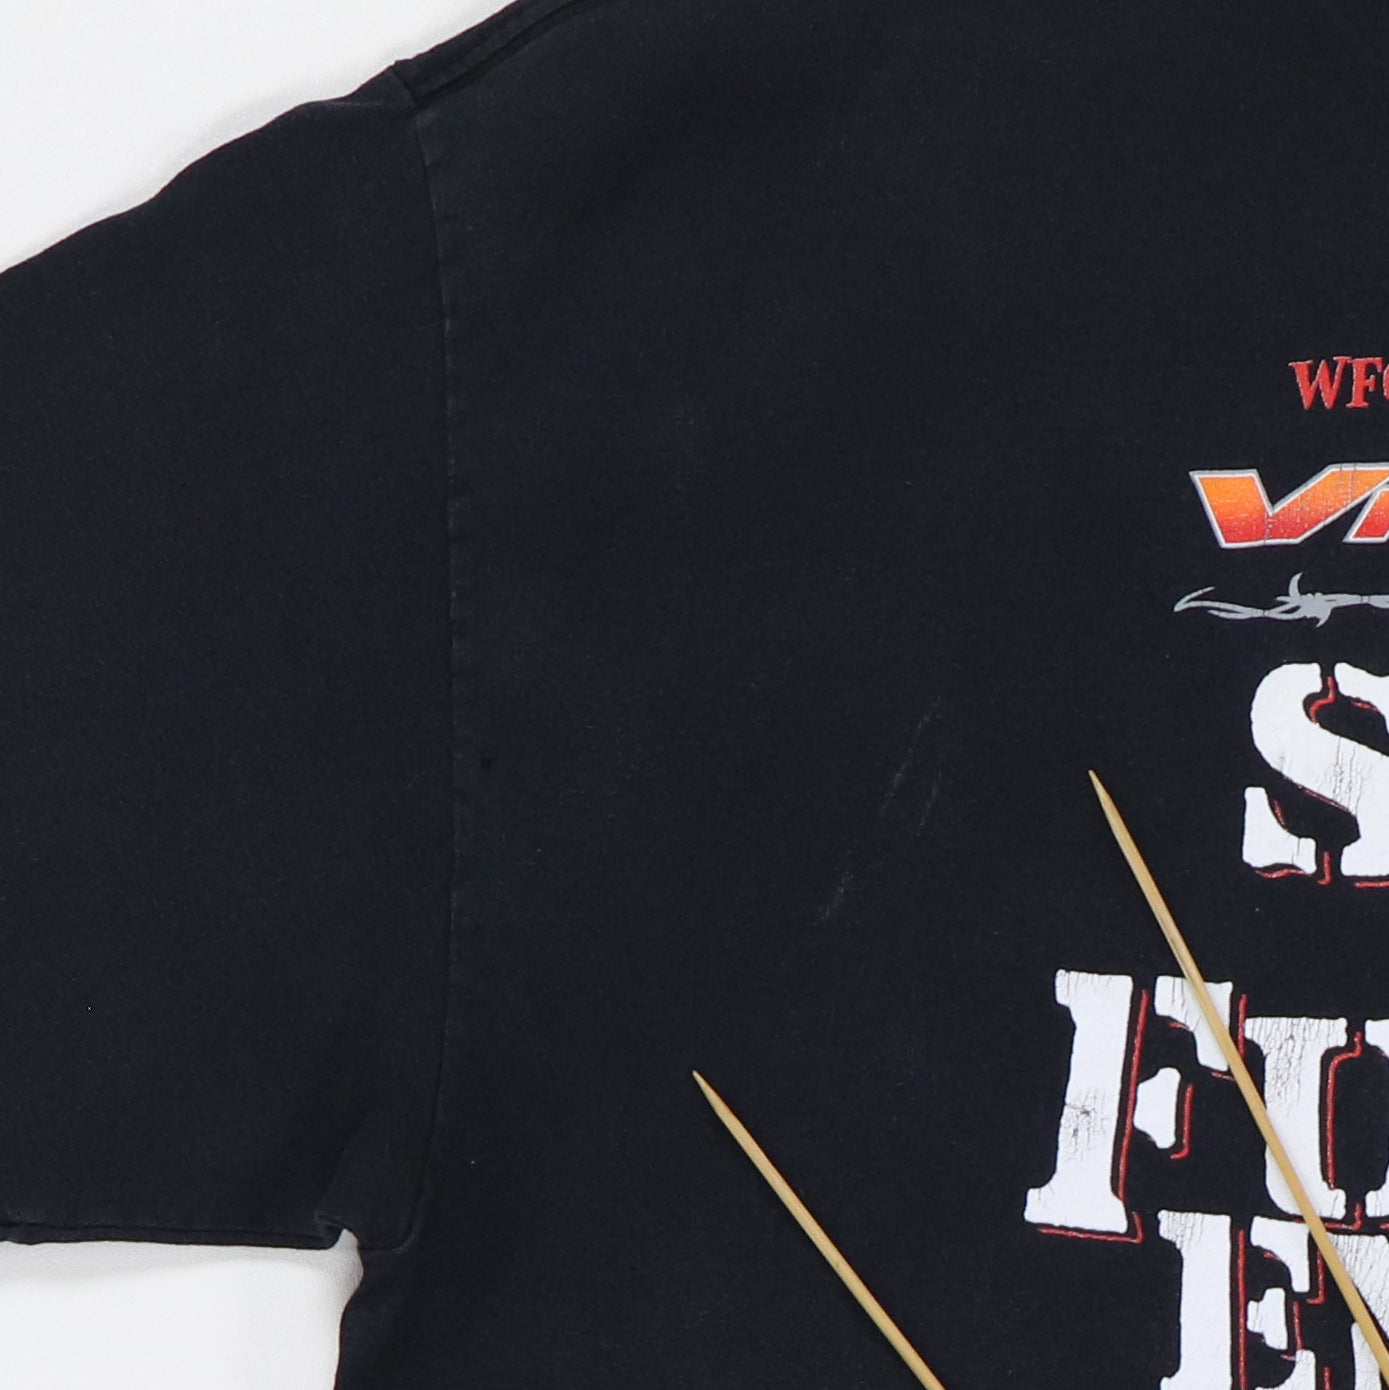 2001 Vince Neil Summer Solo Tour Shirt